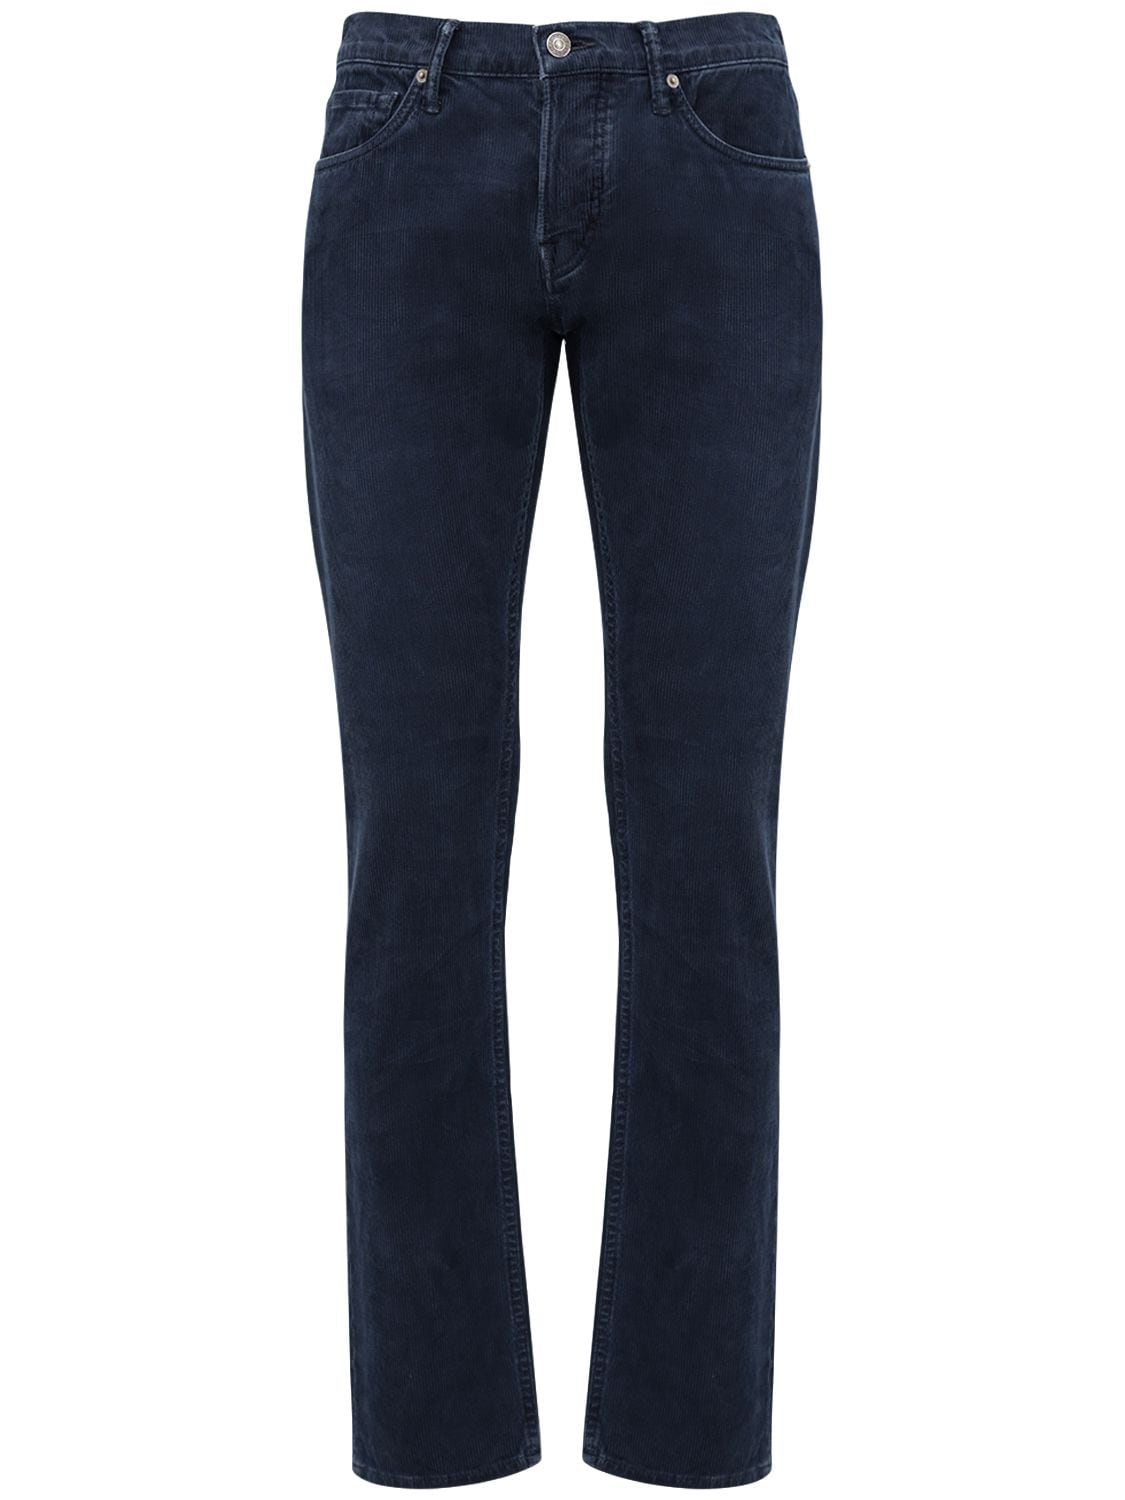 Jeans Slim Fit In Denim Millerighe - TOM FORD - Modalova